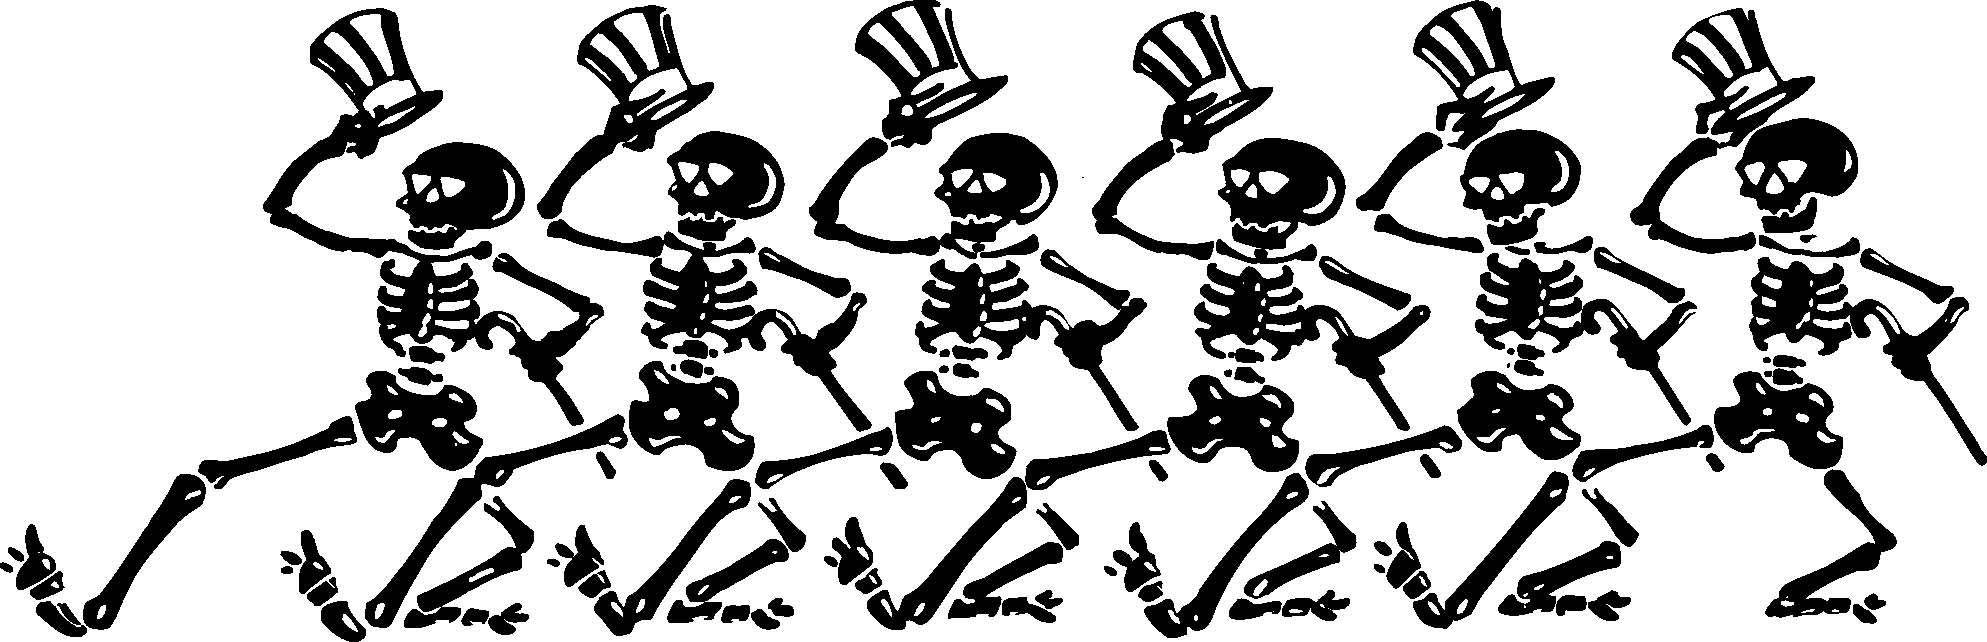 Танцующие скелеты на белом фоне